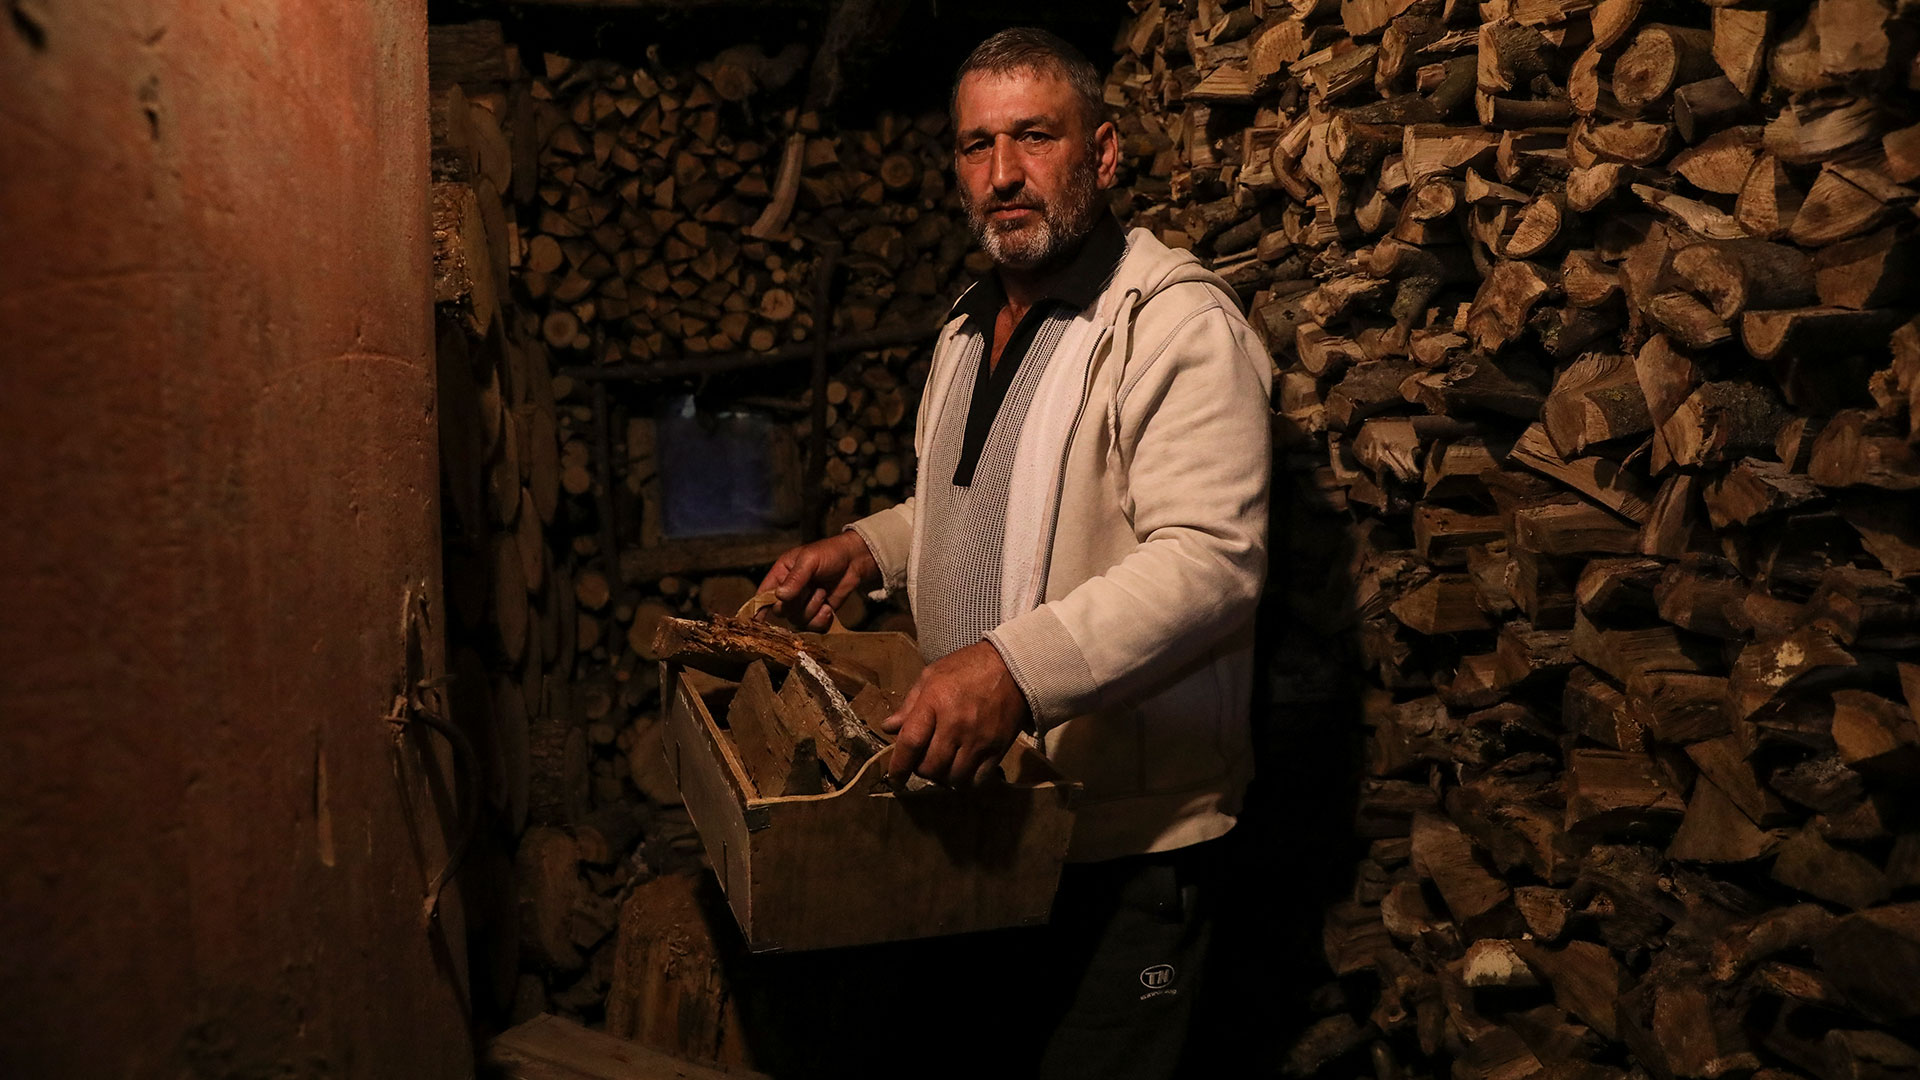 Gheorghe Batca lleva leña de un depósito a su casa  (Foto AP/Aurel Obreja)

